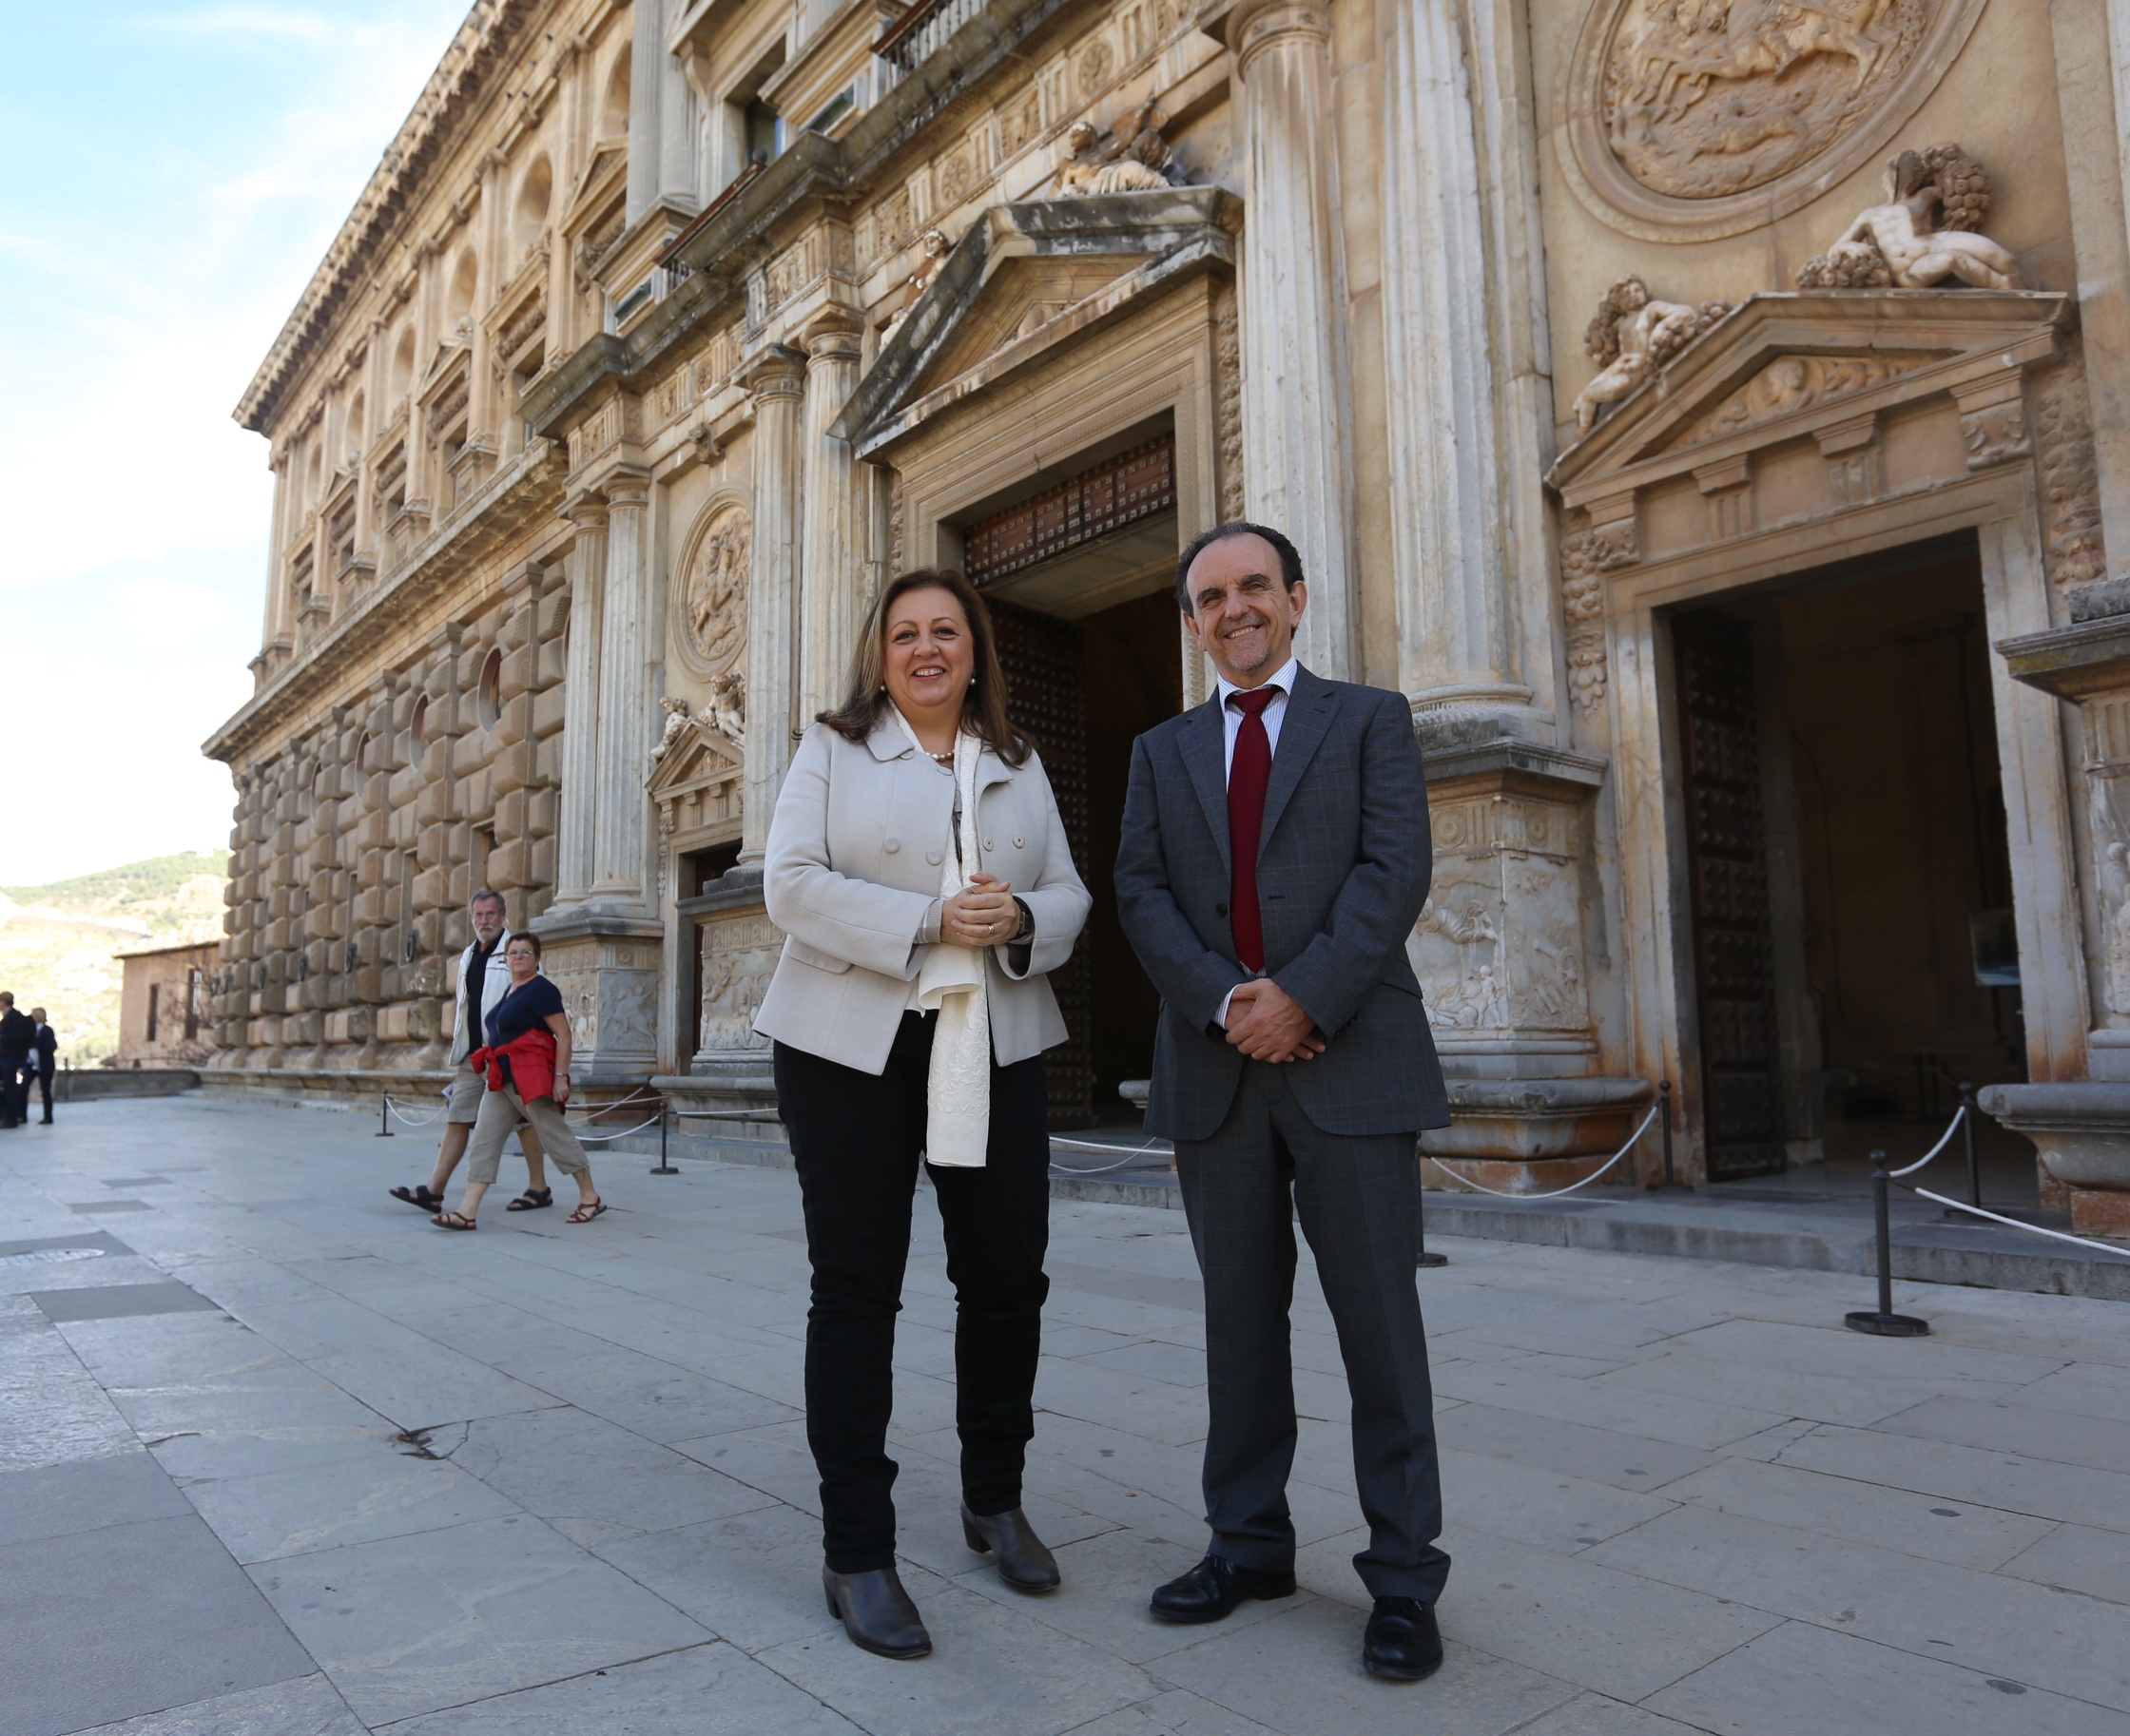 La Consejería de Turismo colaborará con el Patronato de la Alhambra en la promoción y comercialización del monumento